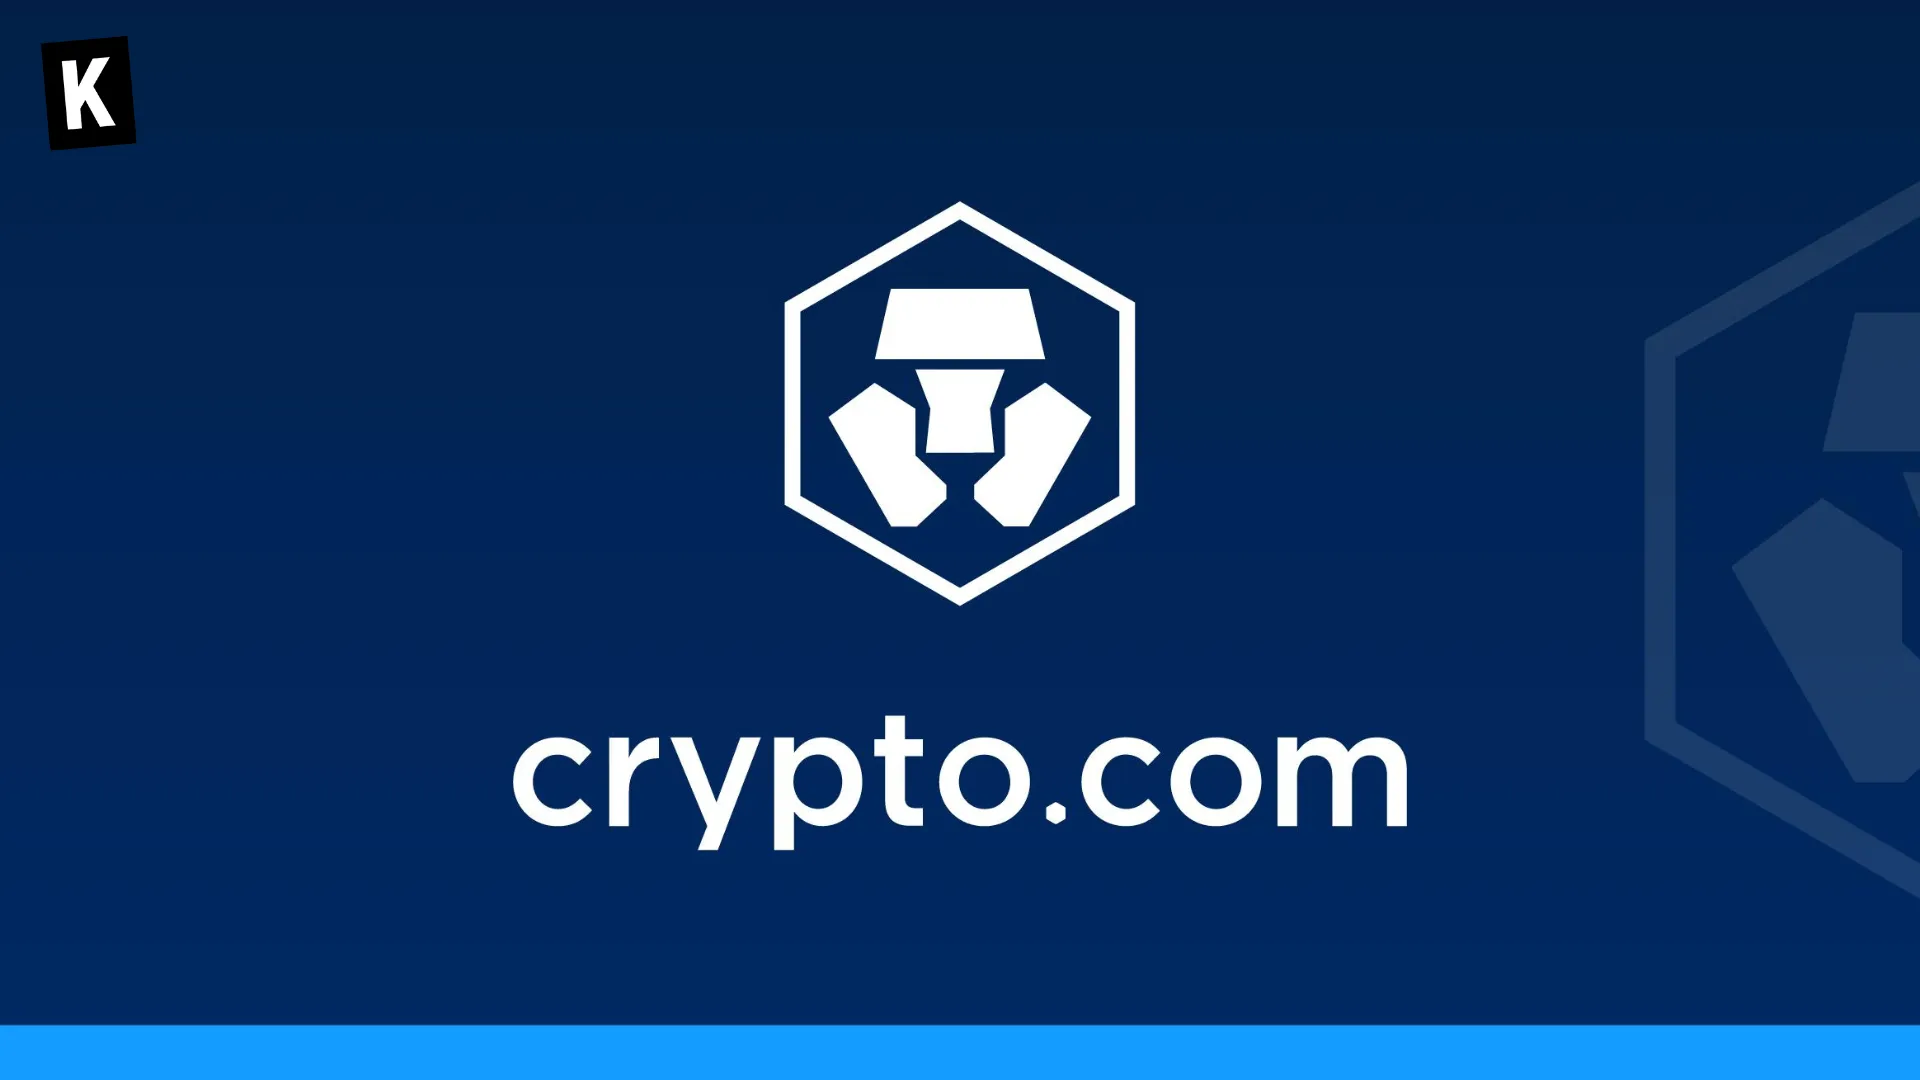 Crypto.com logo on brand asset